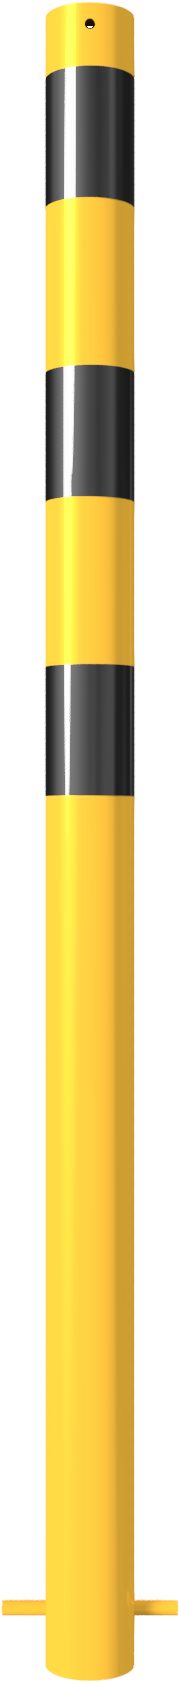 Stahlrohrpoller/Rammschutzpoller 'Bollard' Ø 76 mm